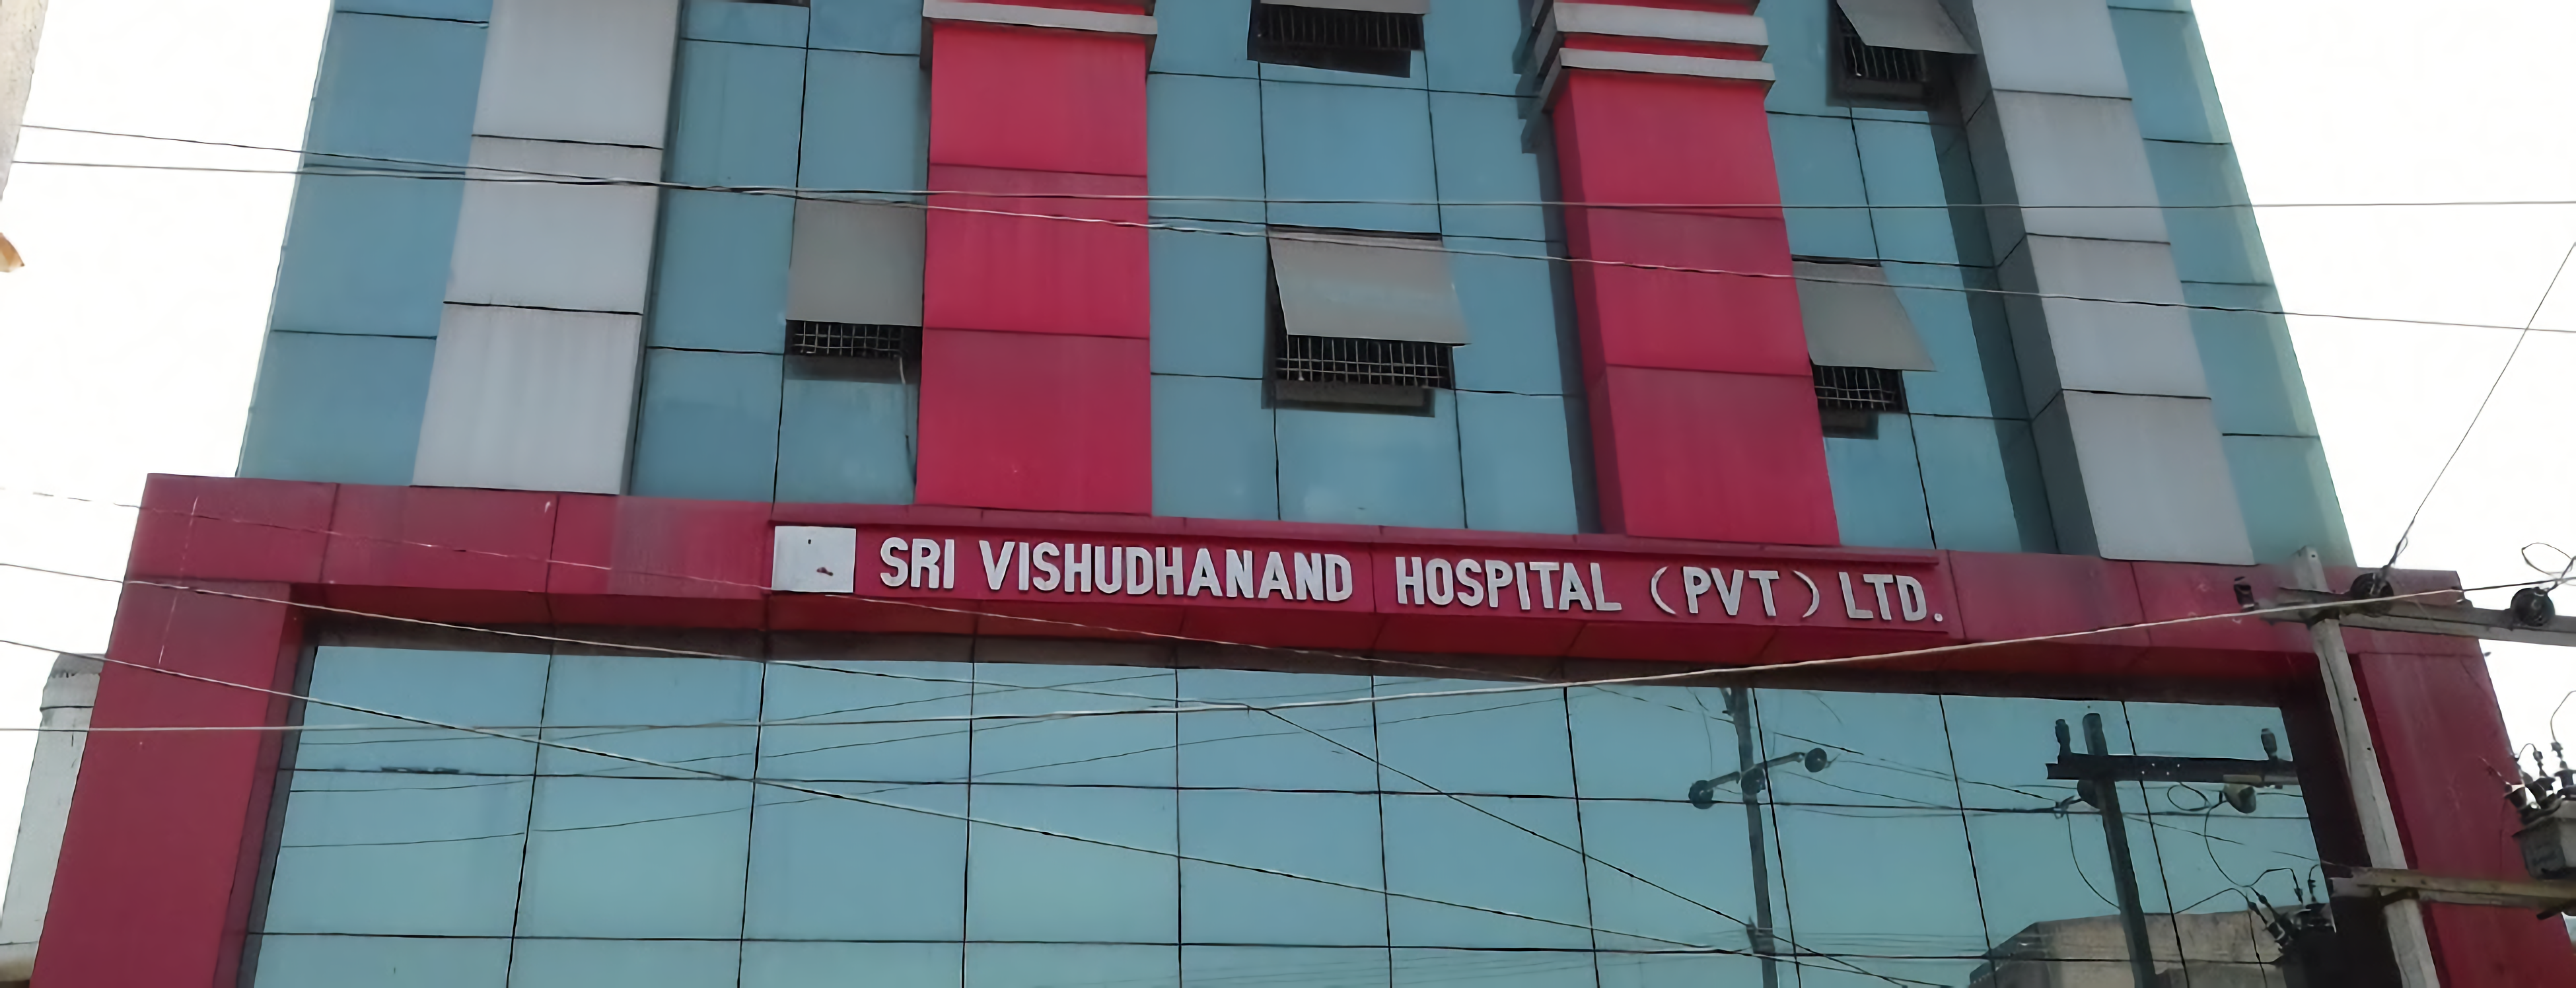 Sri Vishudhanand Hospital